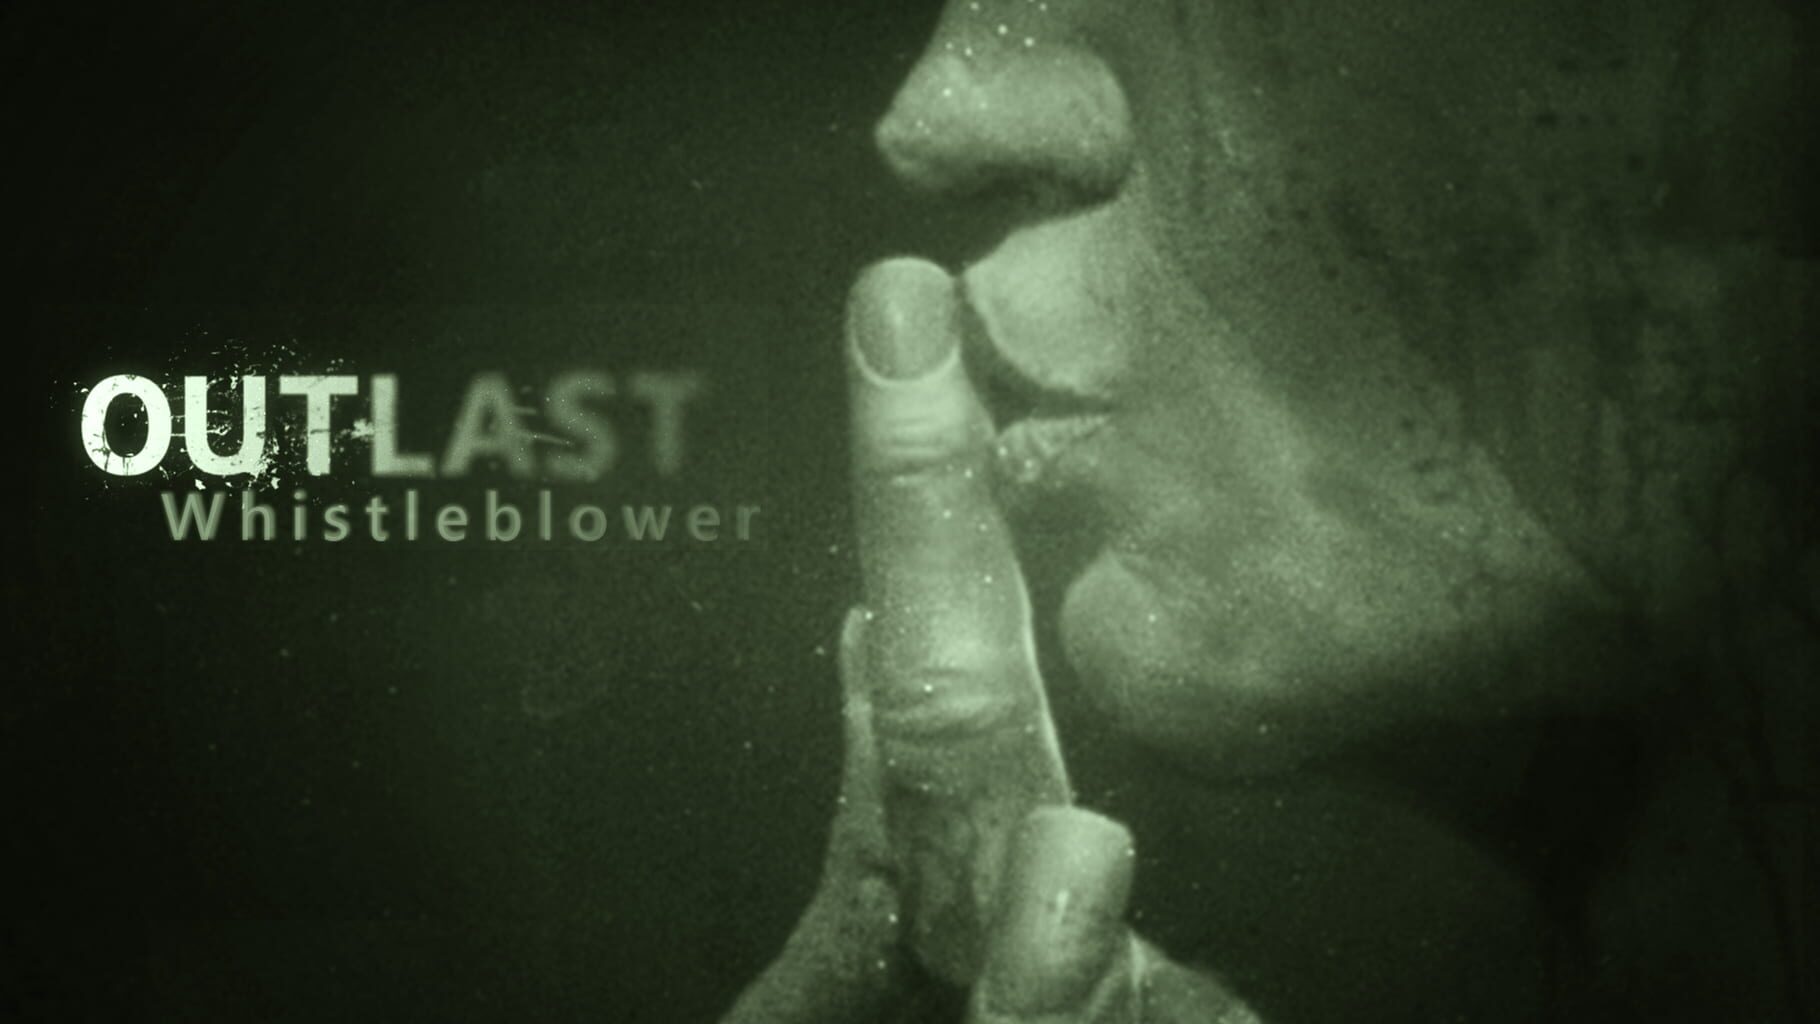 Arte - Outlast: Whistleblower